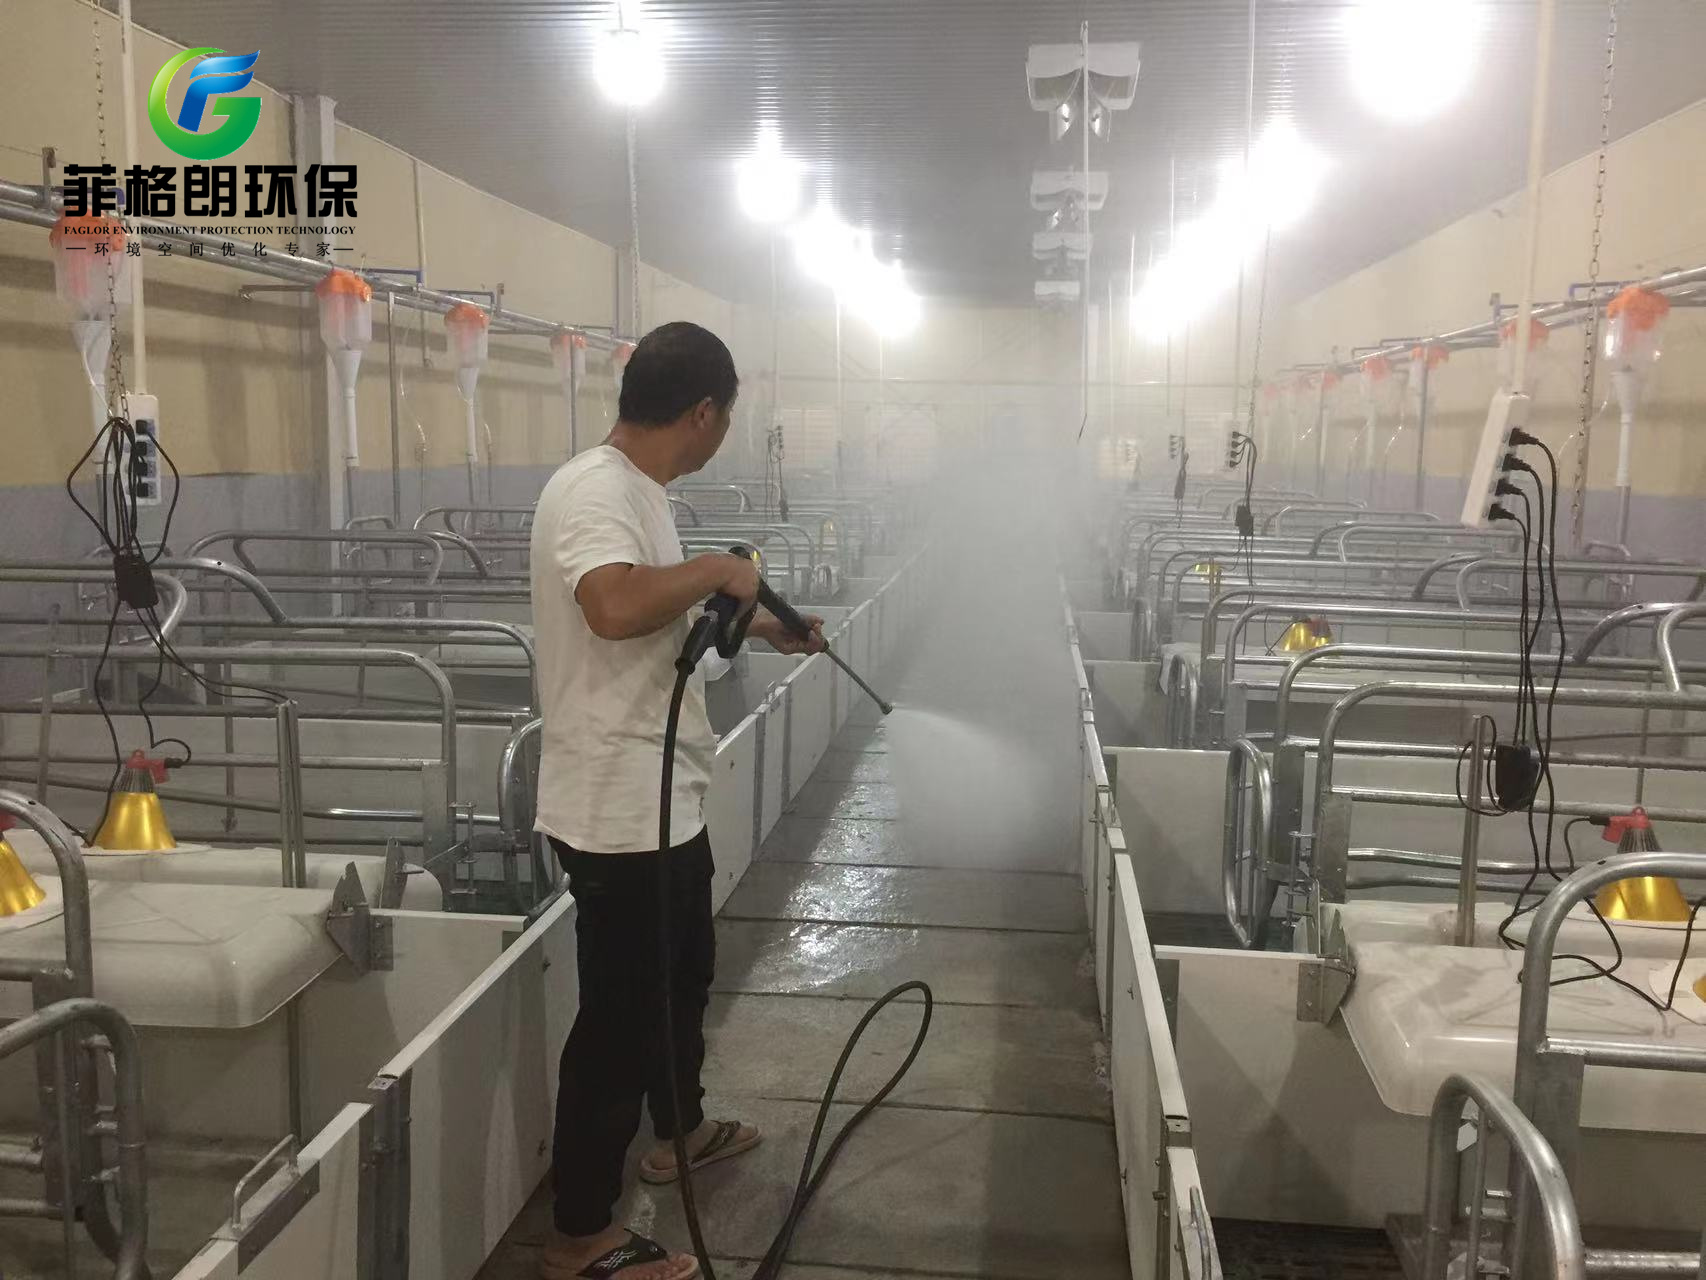 雲南聖基光電生豬養殖接入菲格朗中央清洗系統插圖3